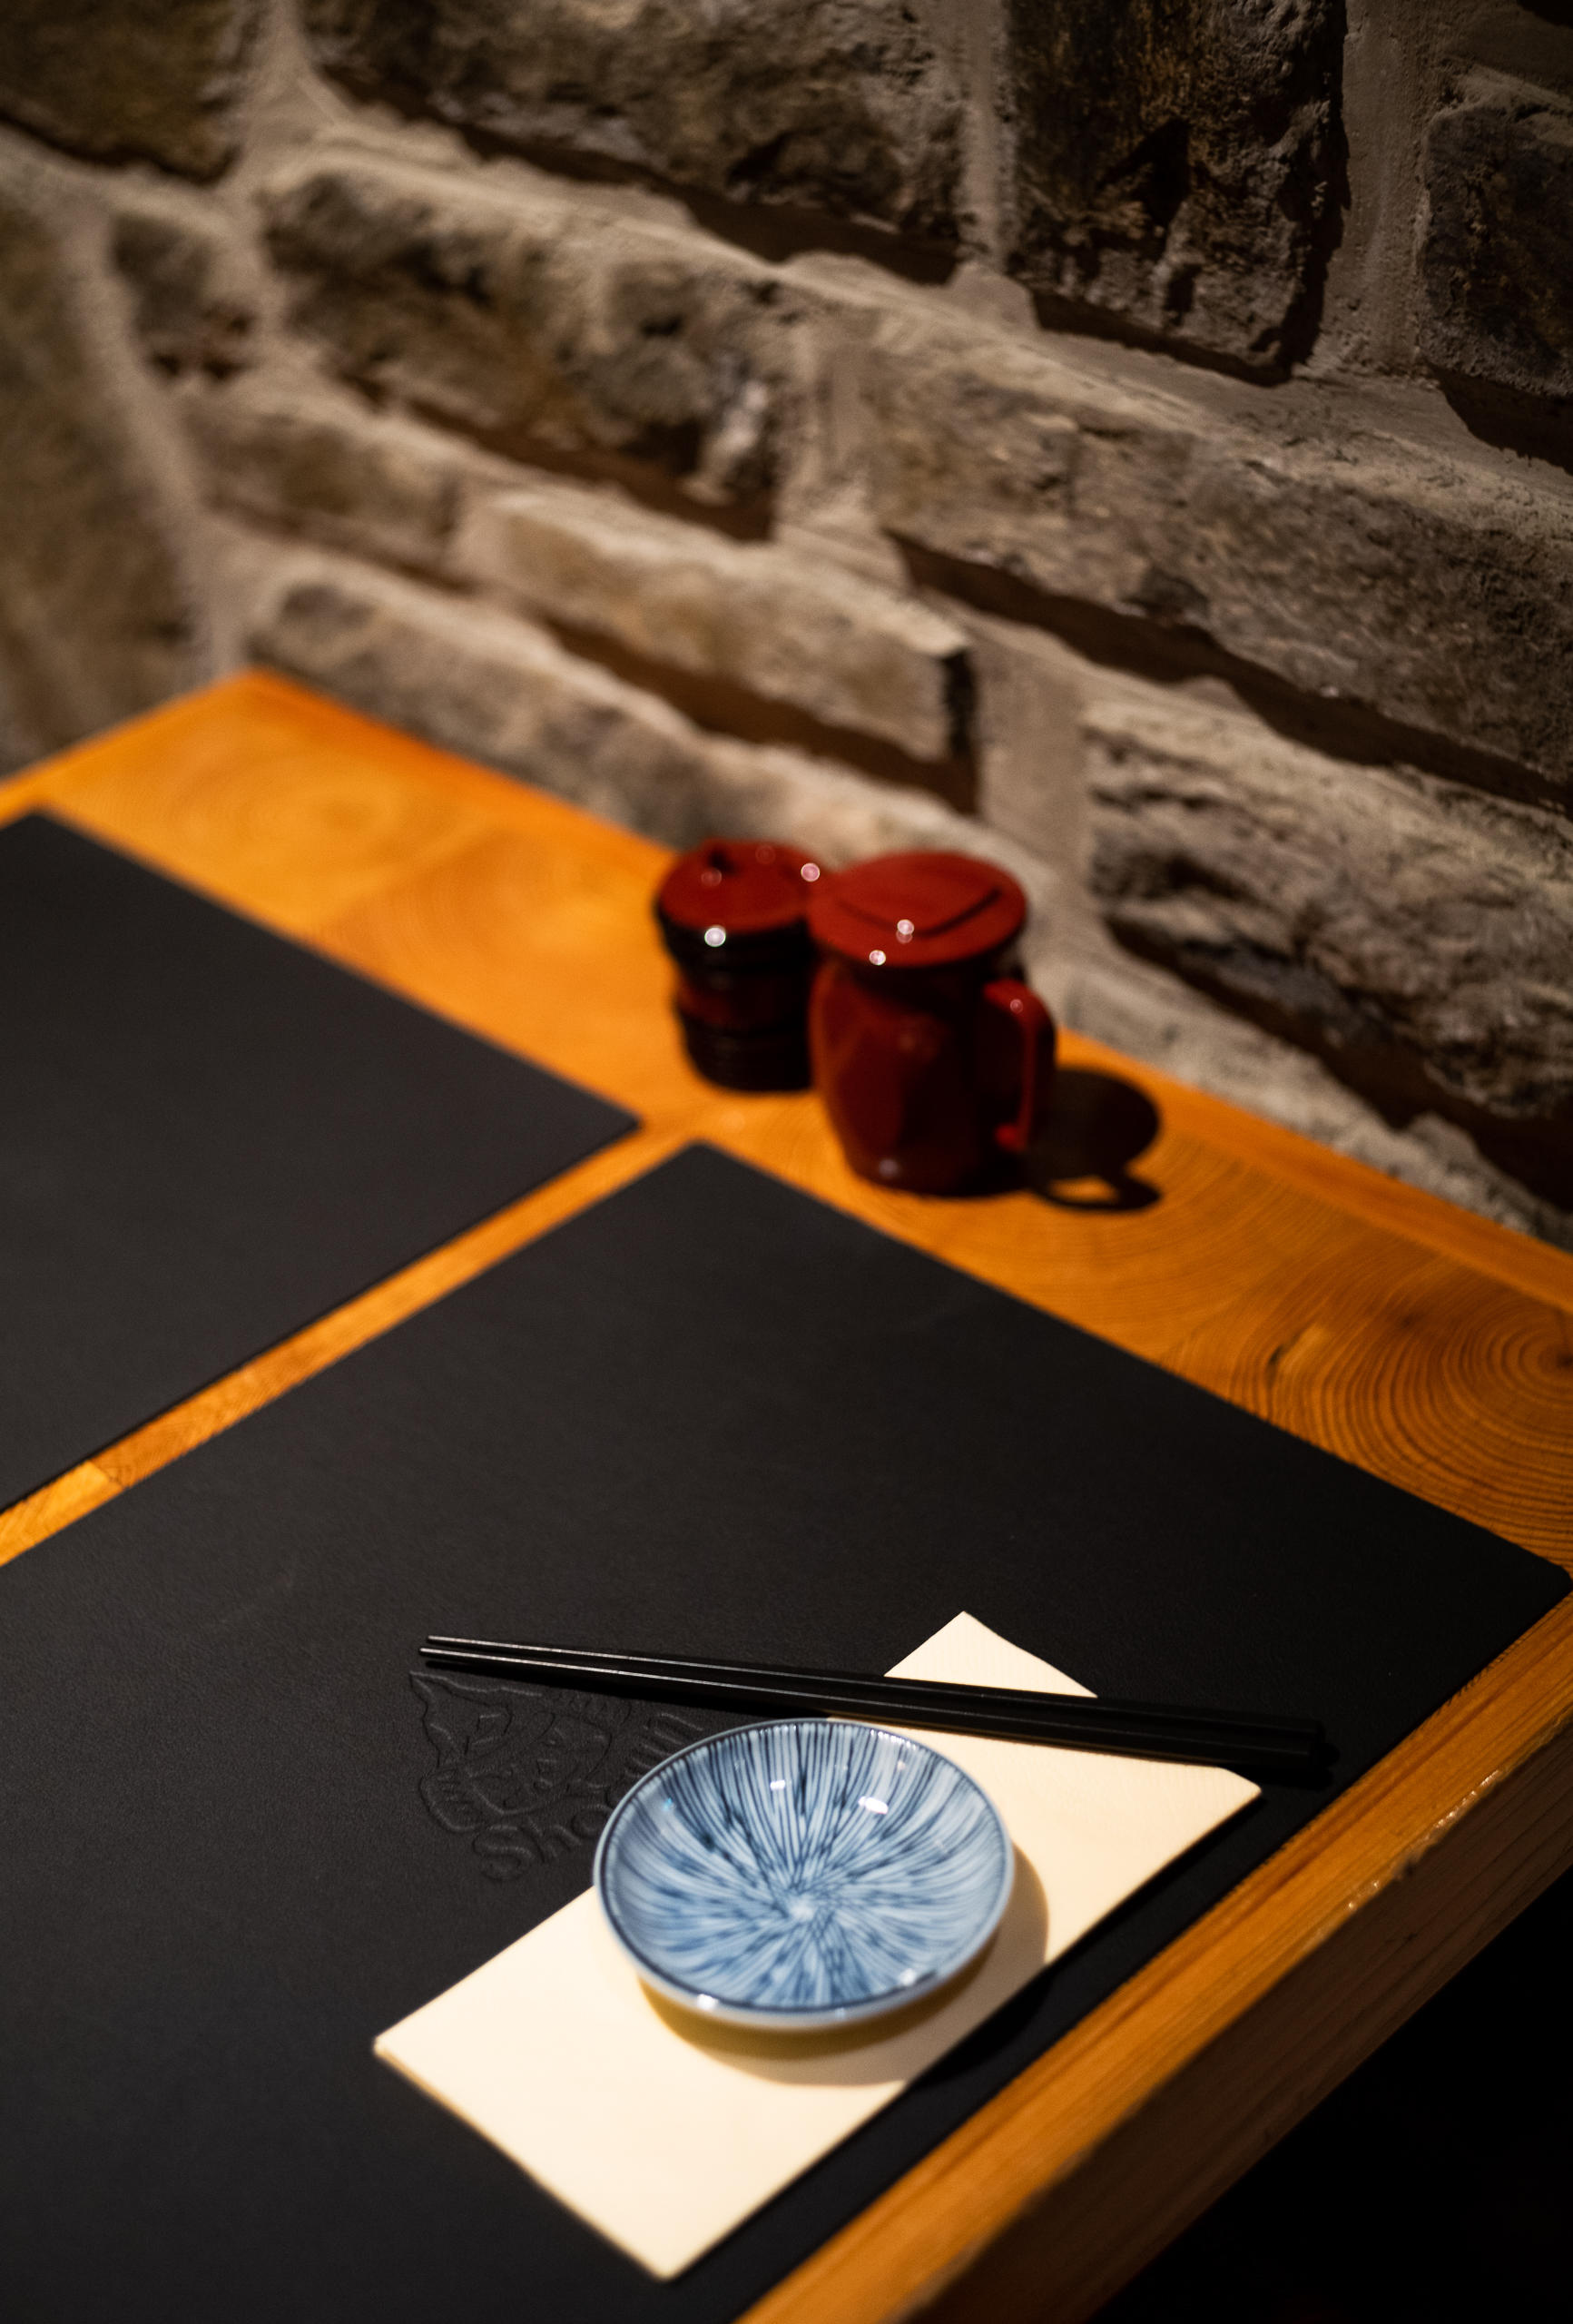 Shogun Japan Restaurant